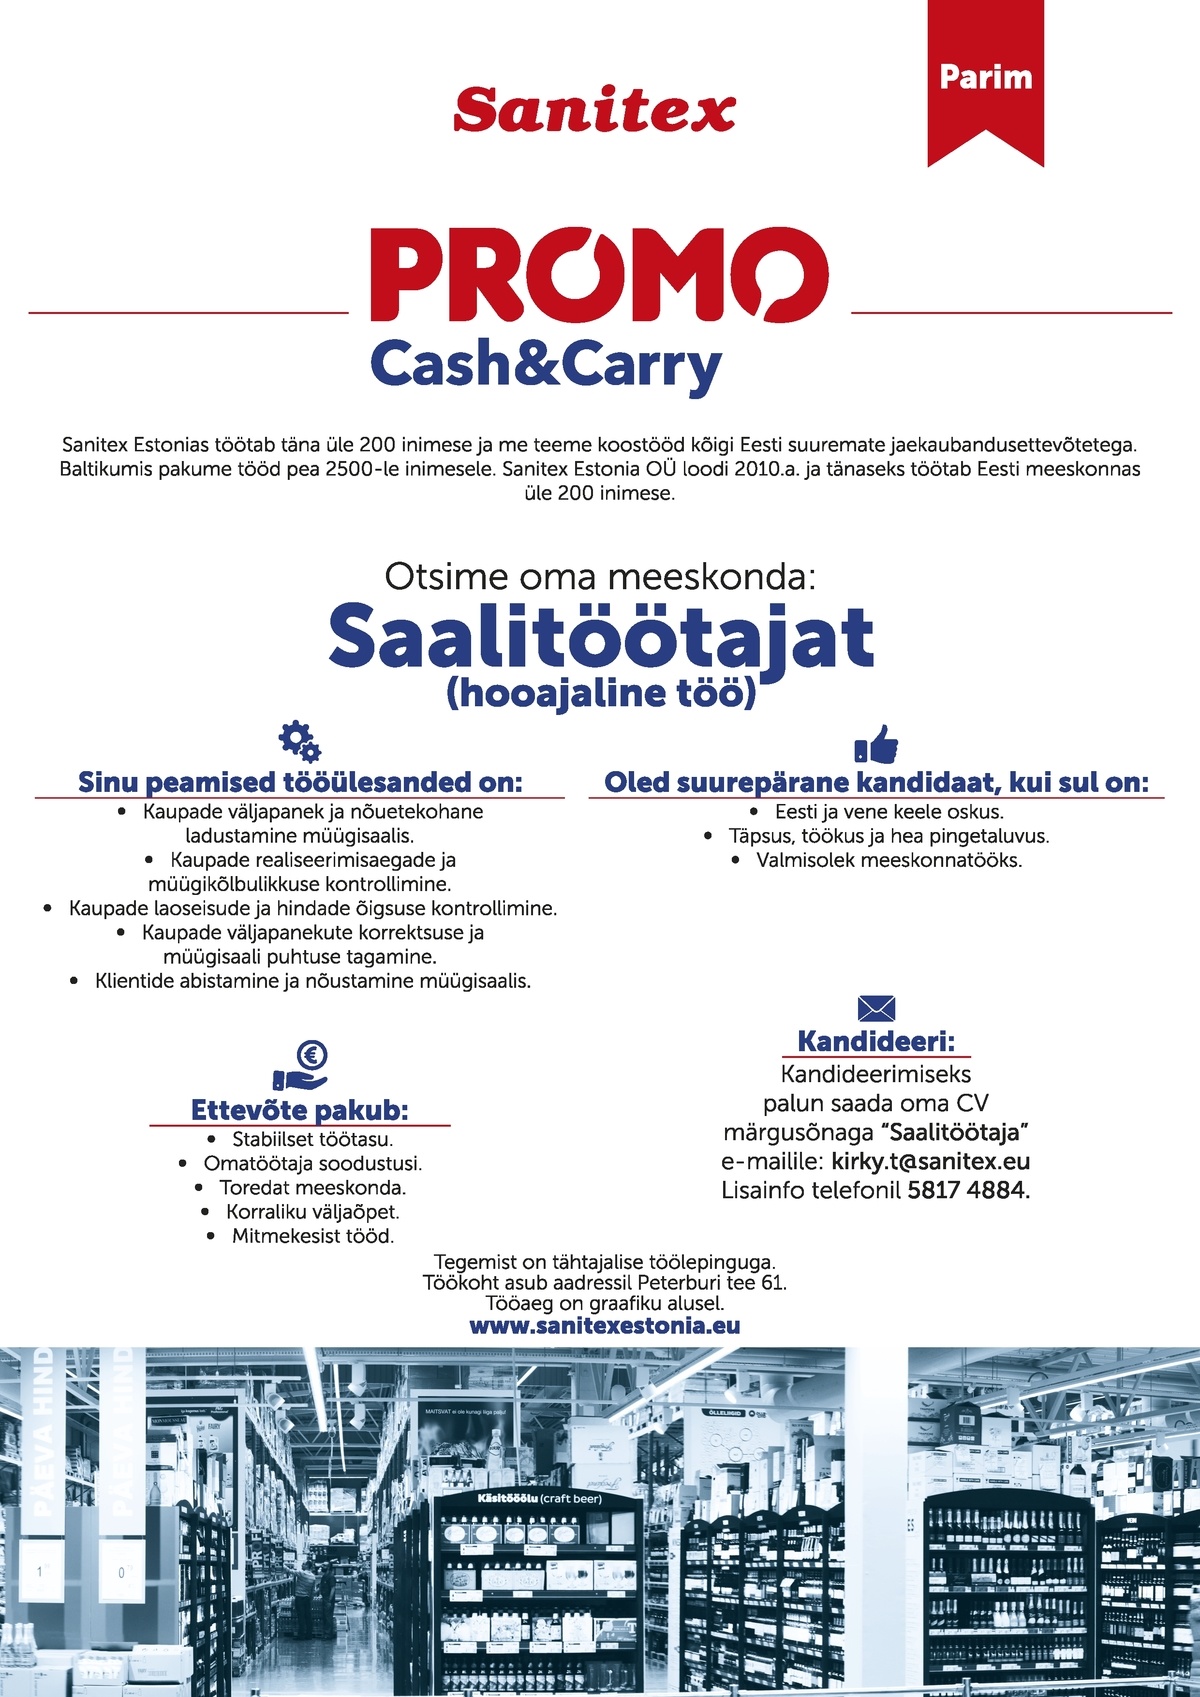 SANITEX ESTONIA OÜ PROMO Cash&Carry saalitöötaja (hooajaline töö)